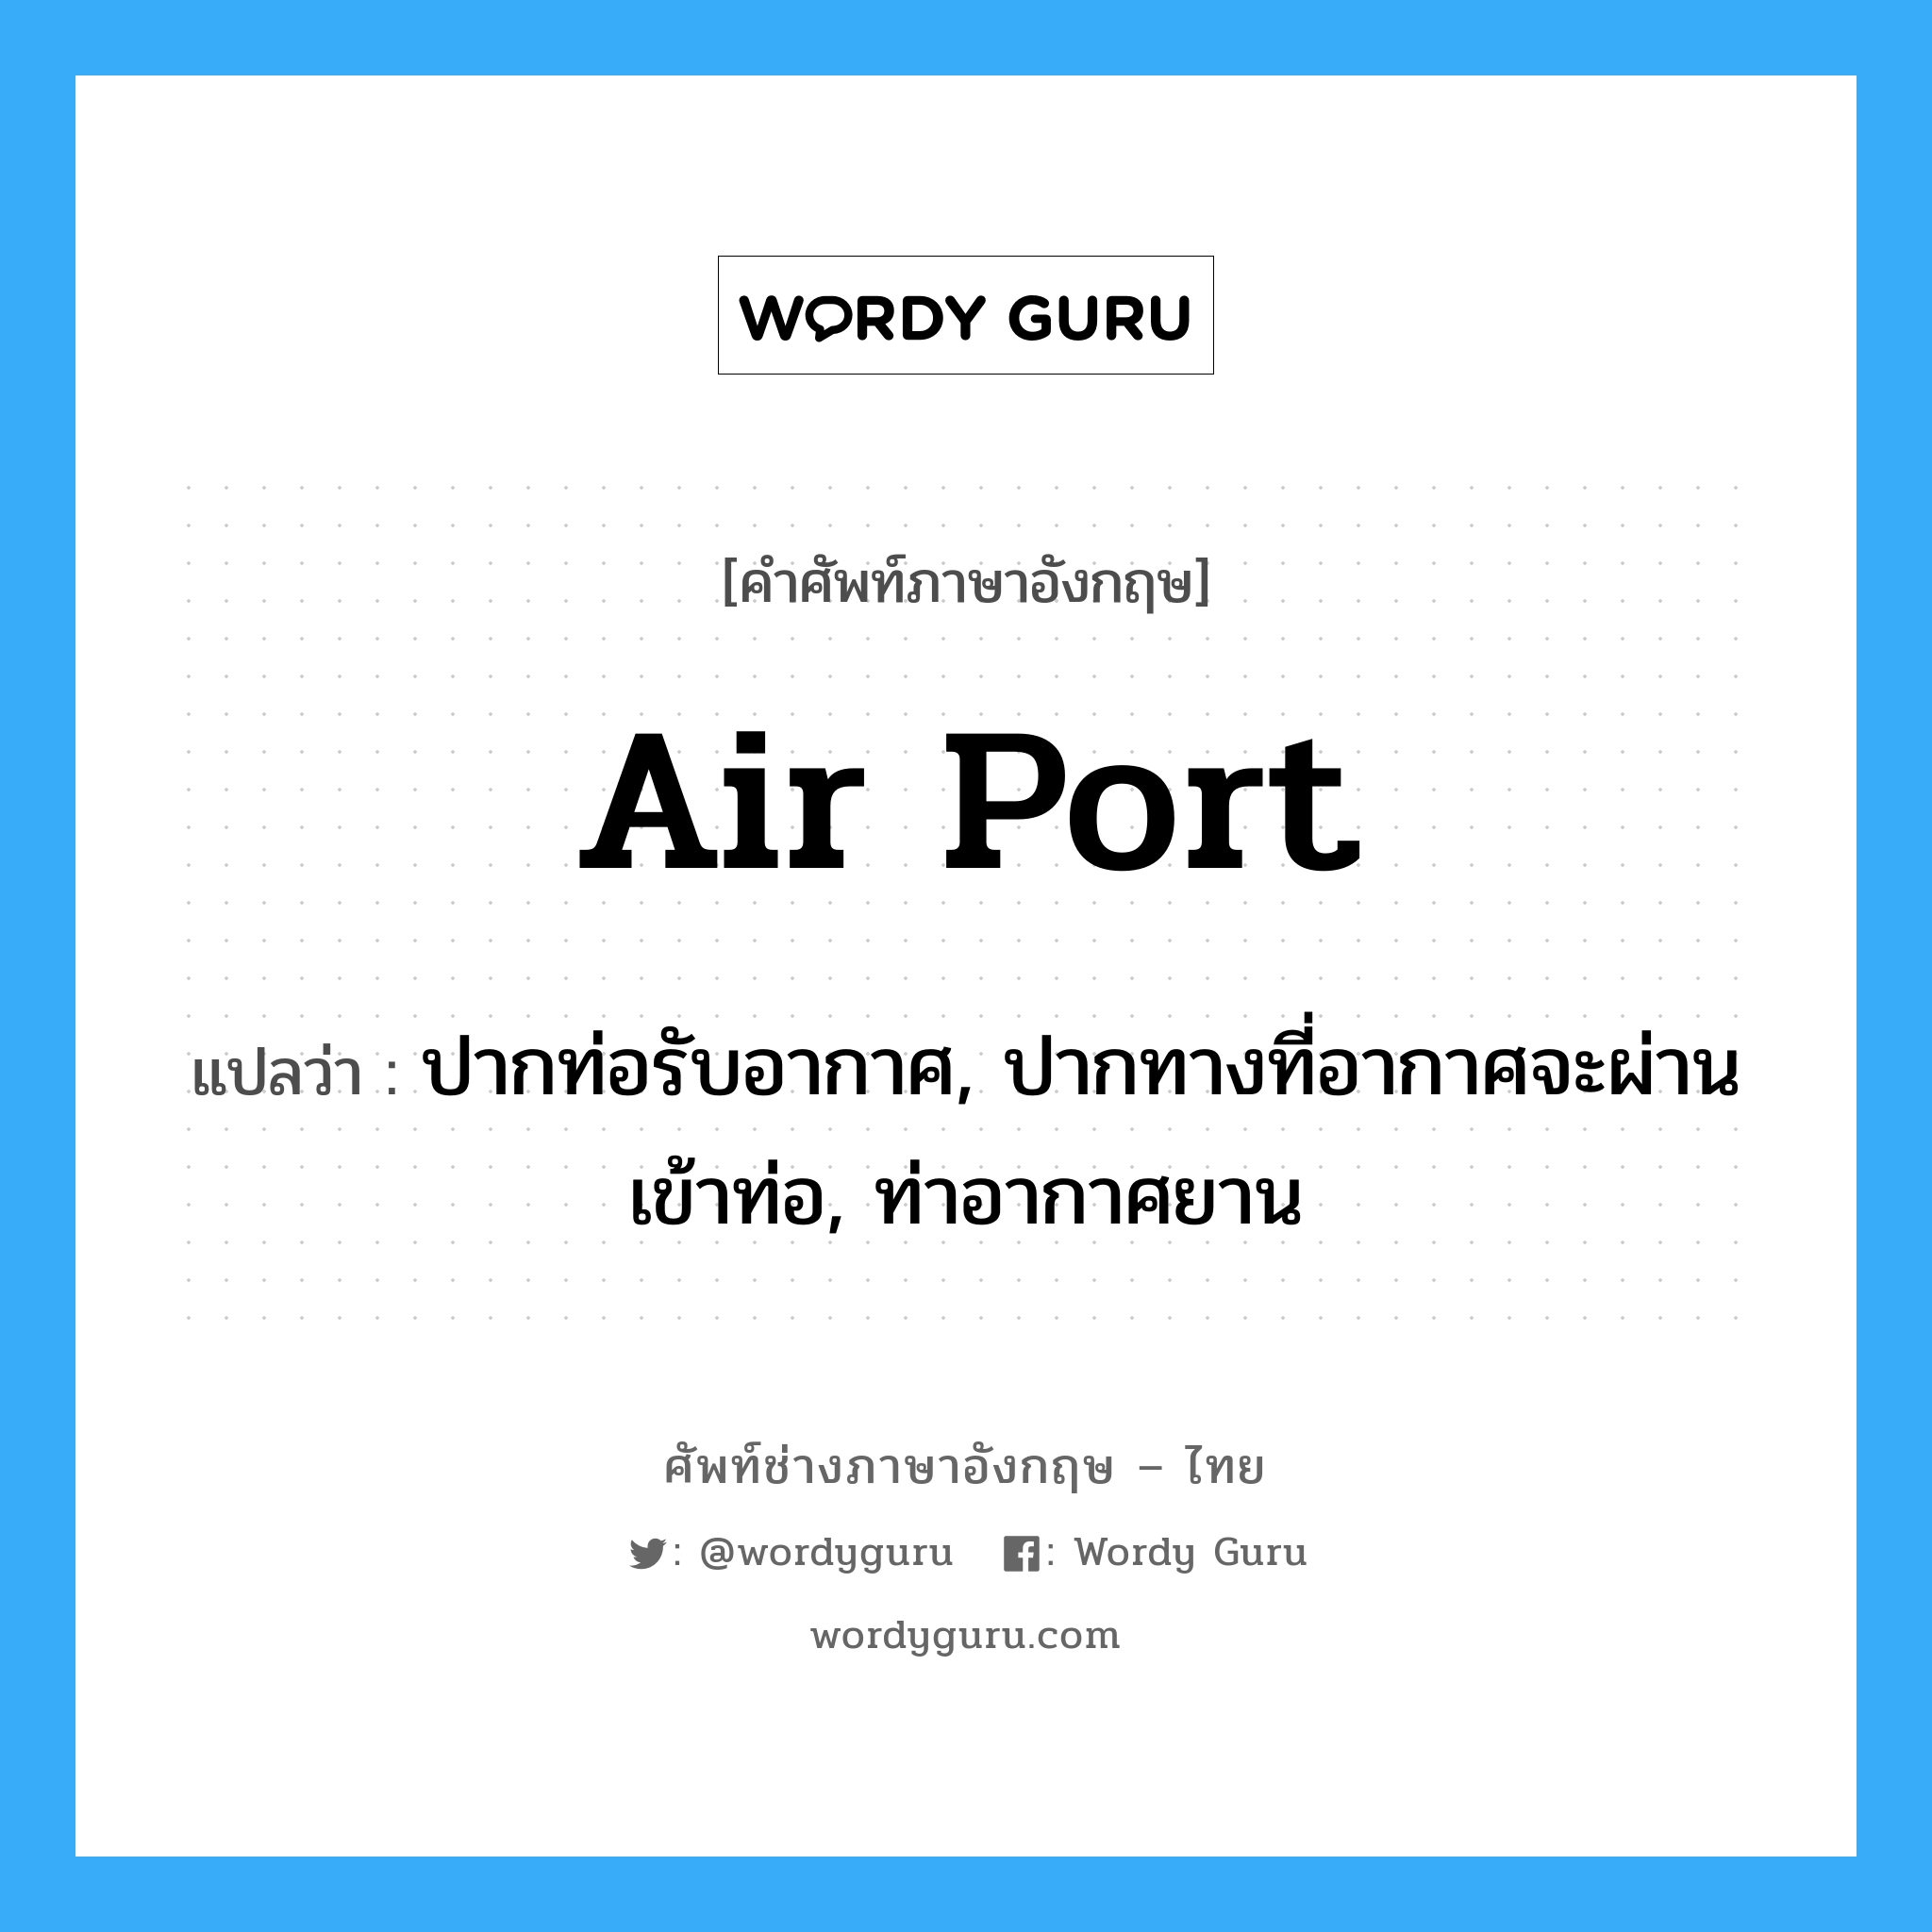 air-port แปลว่า?, คำศัพท์ช่างภาษาอังกฤษ - ไทย air port คำศัพท์ภาษาอังกฤษ air port แปลว่า ปากท่อรับอากาศ, ปากทางที่อากาศจะผ่านเข้าท่อ, ท่าอากาศยาน